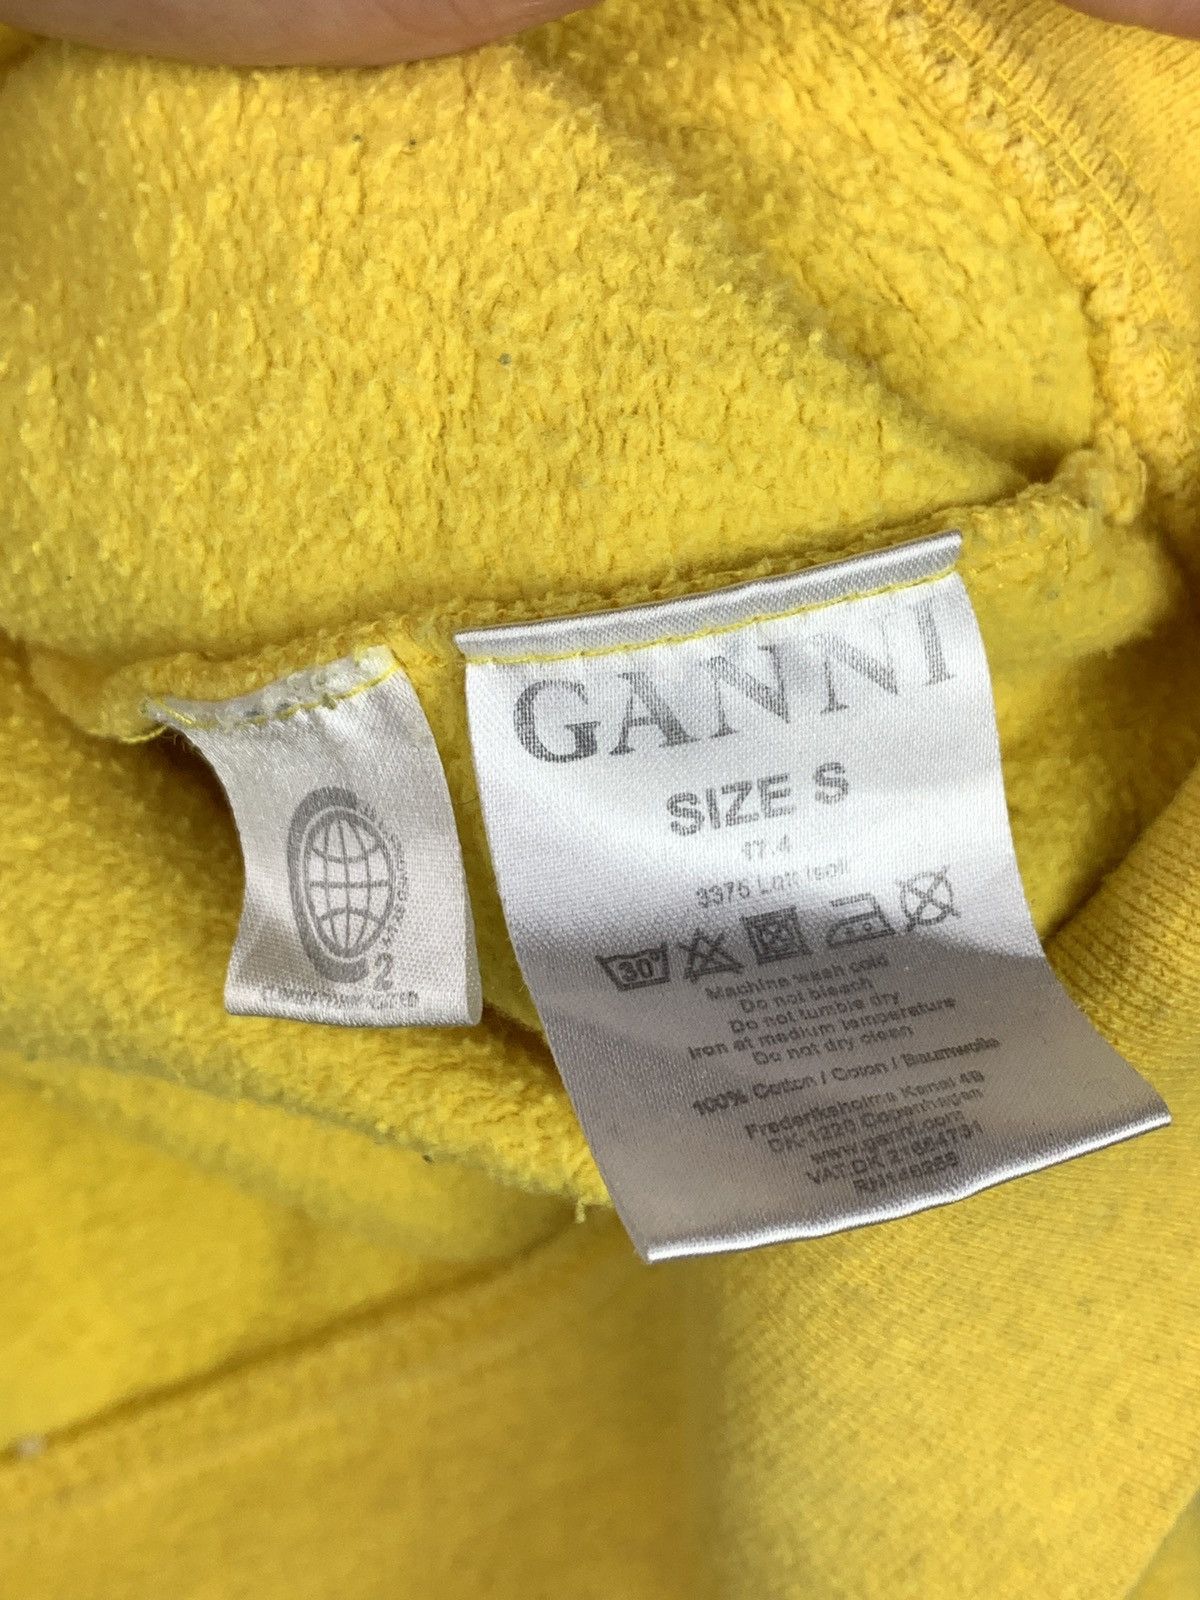 Ganni Ganni Lott Isoli Hoodie Easy Peasy Size S / US 4 / IT 40 - 7 Thumbnail